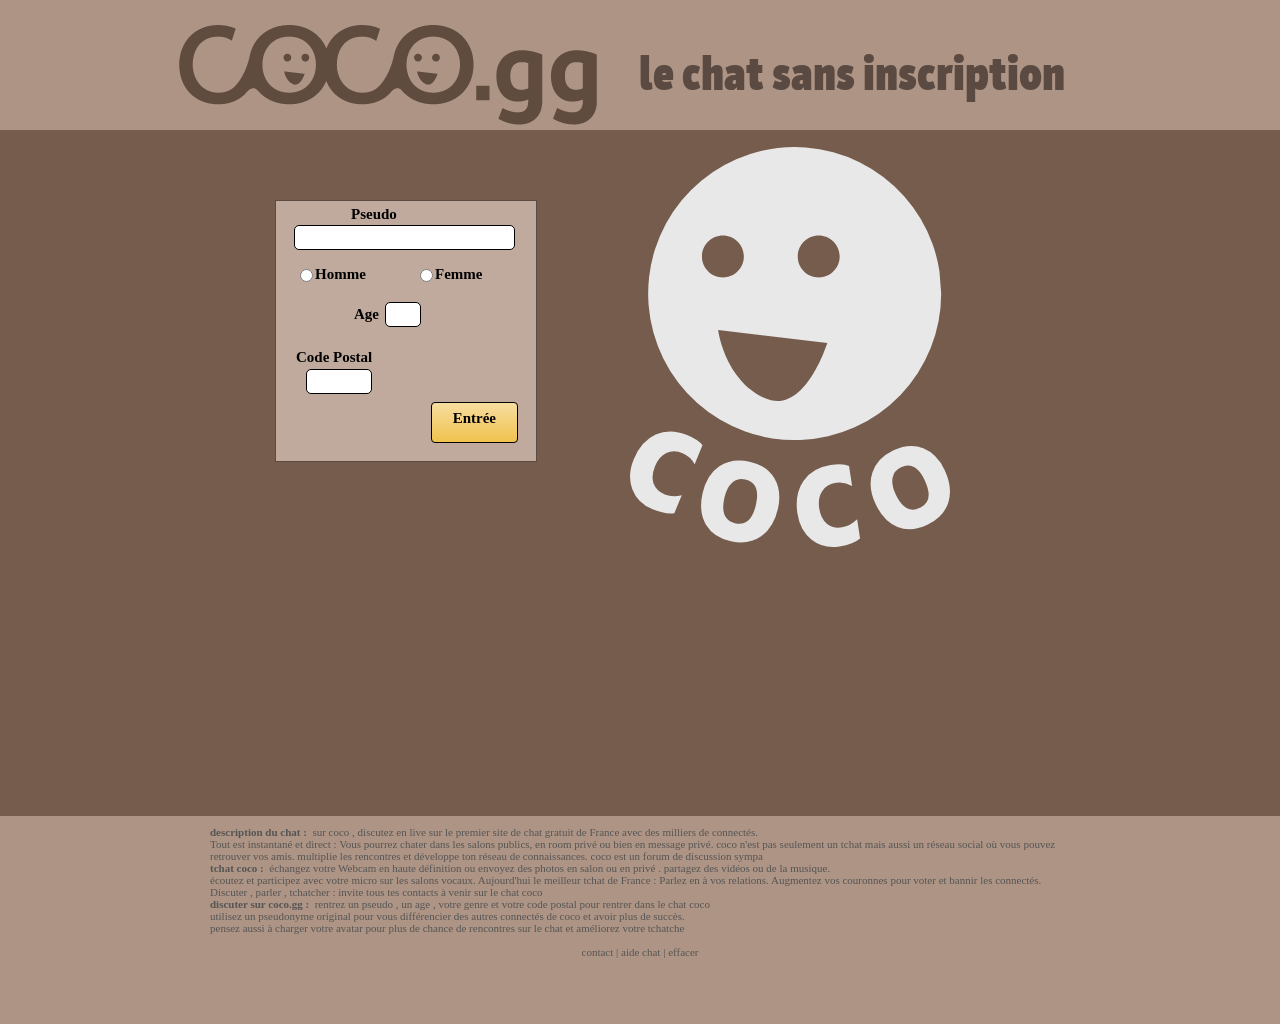 www.coco.fr